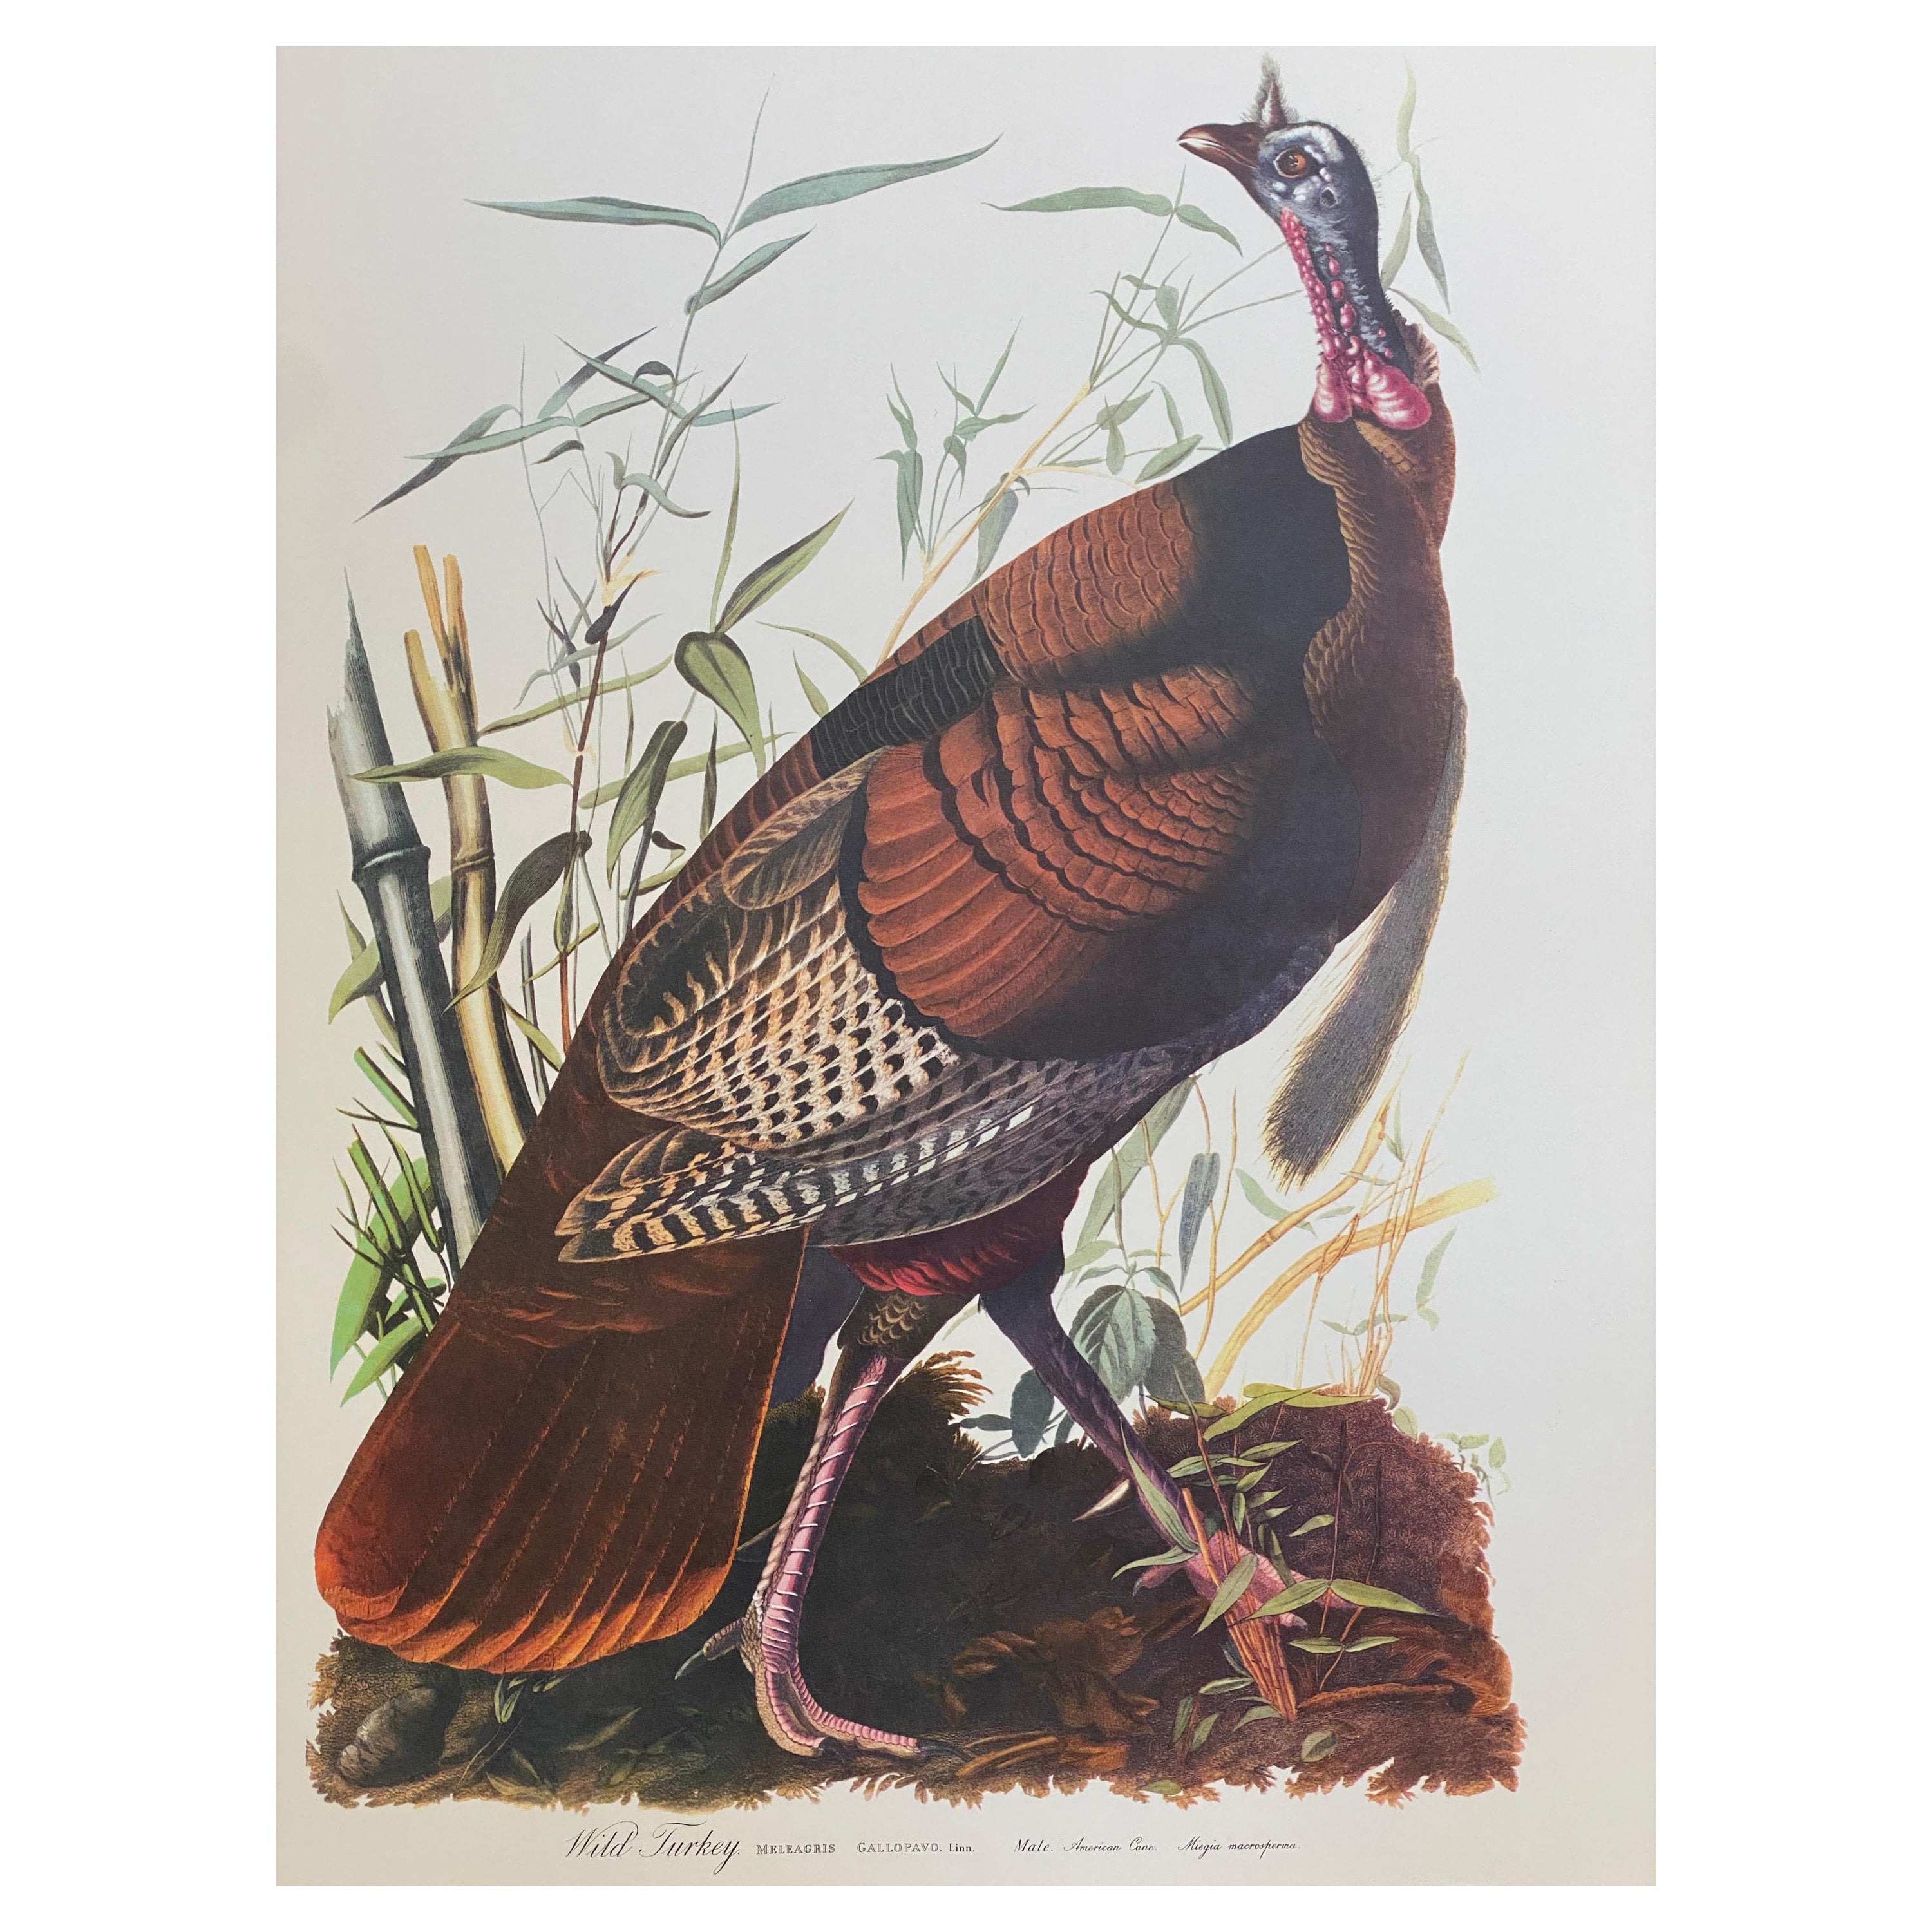 Großer klassischer Vogel-Farbdruck nach John James Audubon, Wildturke